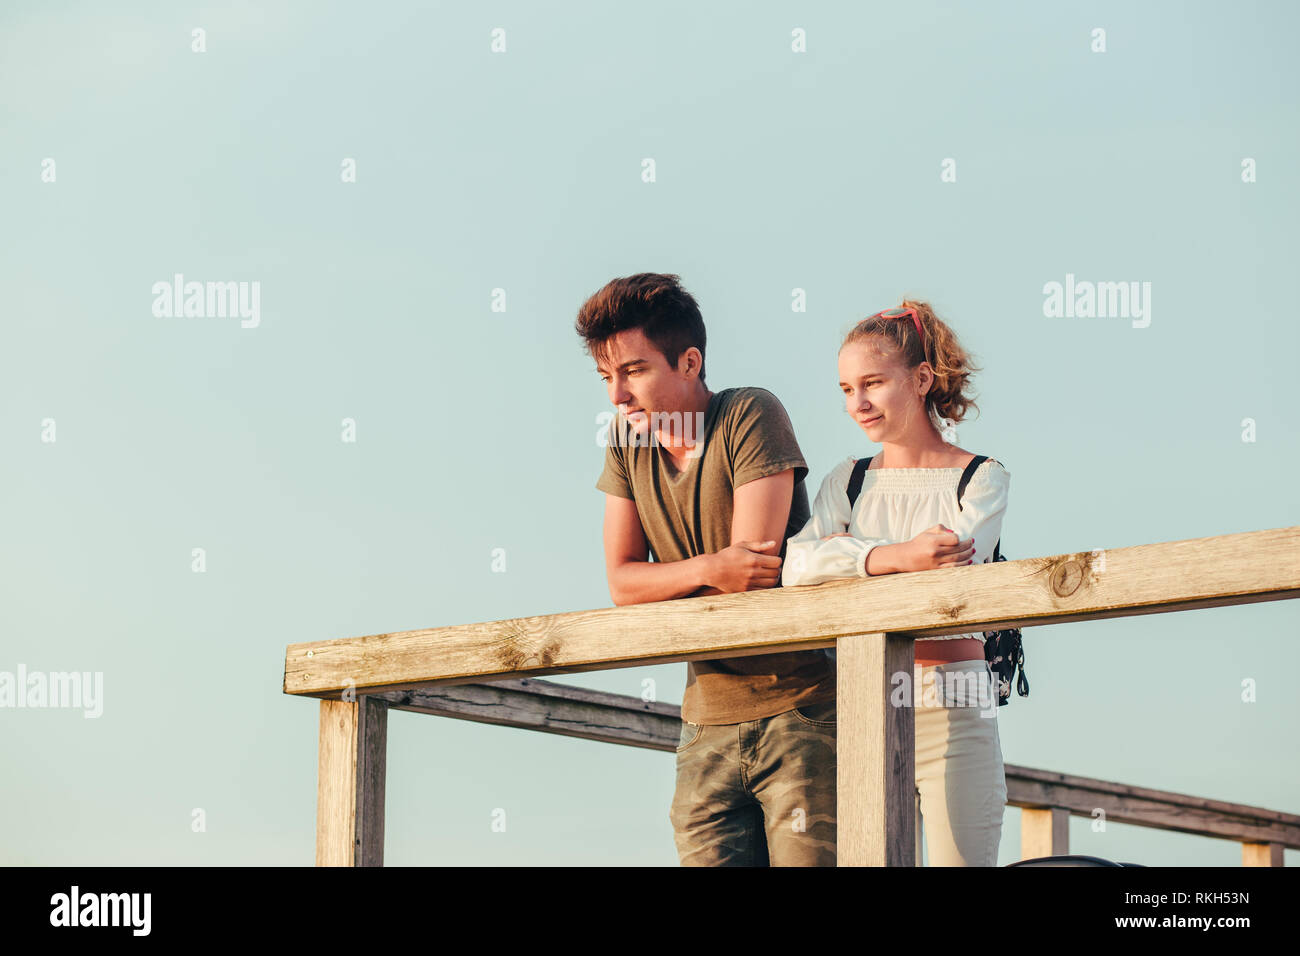 Happy smiling couple de jeune femme et homme assis sur un quai sur la mer durant les vacances d'été. Copie de texte Banque D'Images